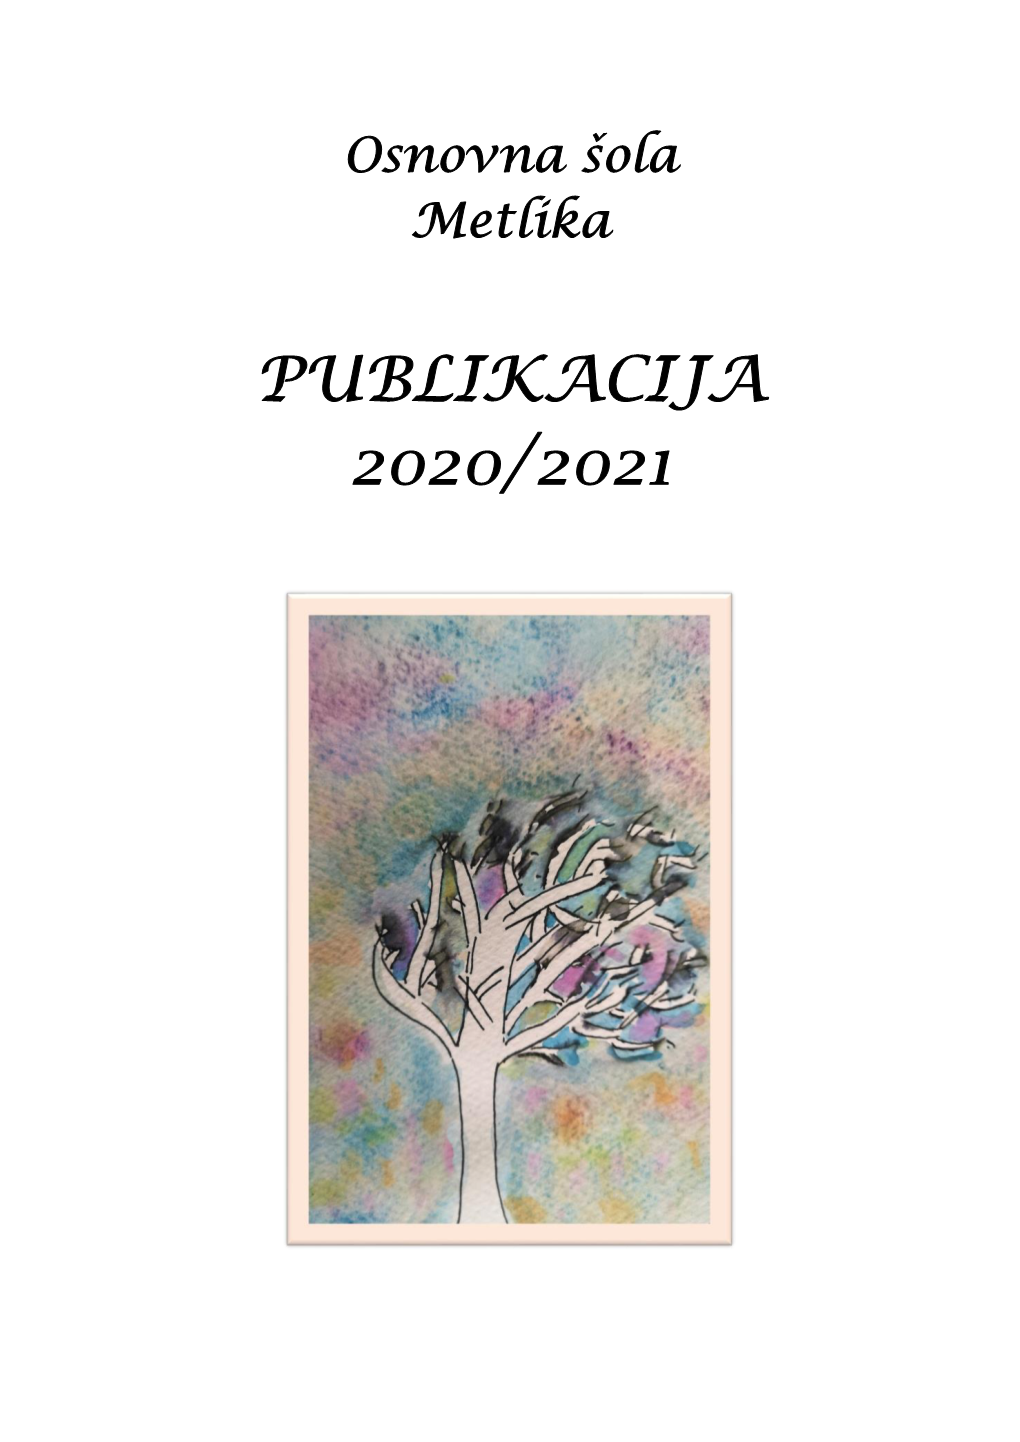 Publikacija 2020/2021